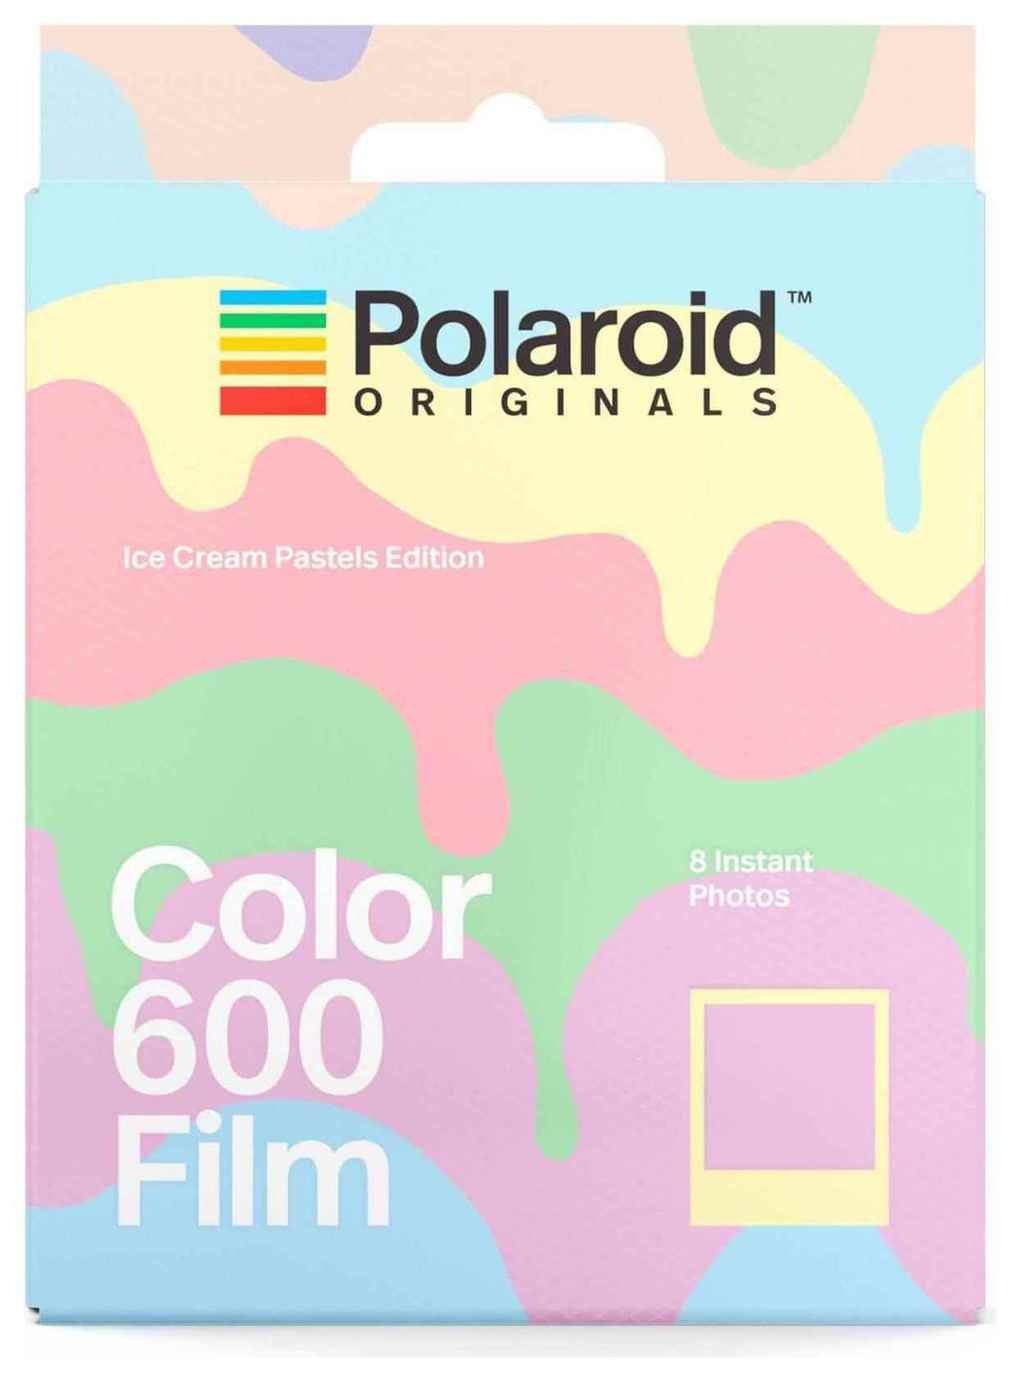 Polaroid Originals Colour Film for 600 Ice Cream Pastels review